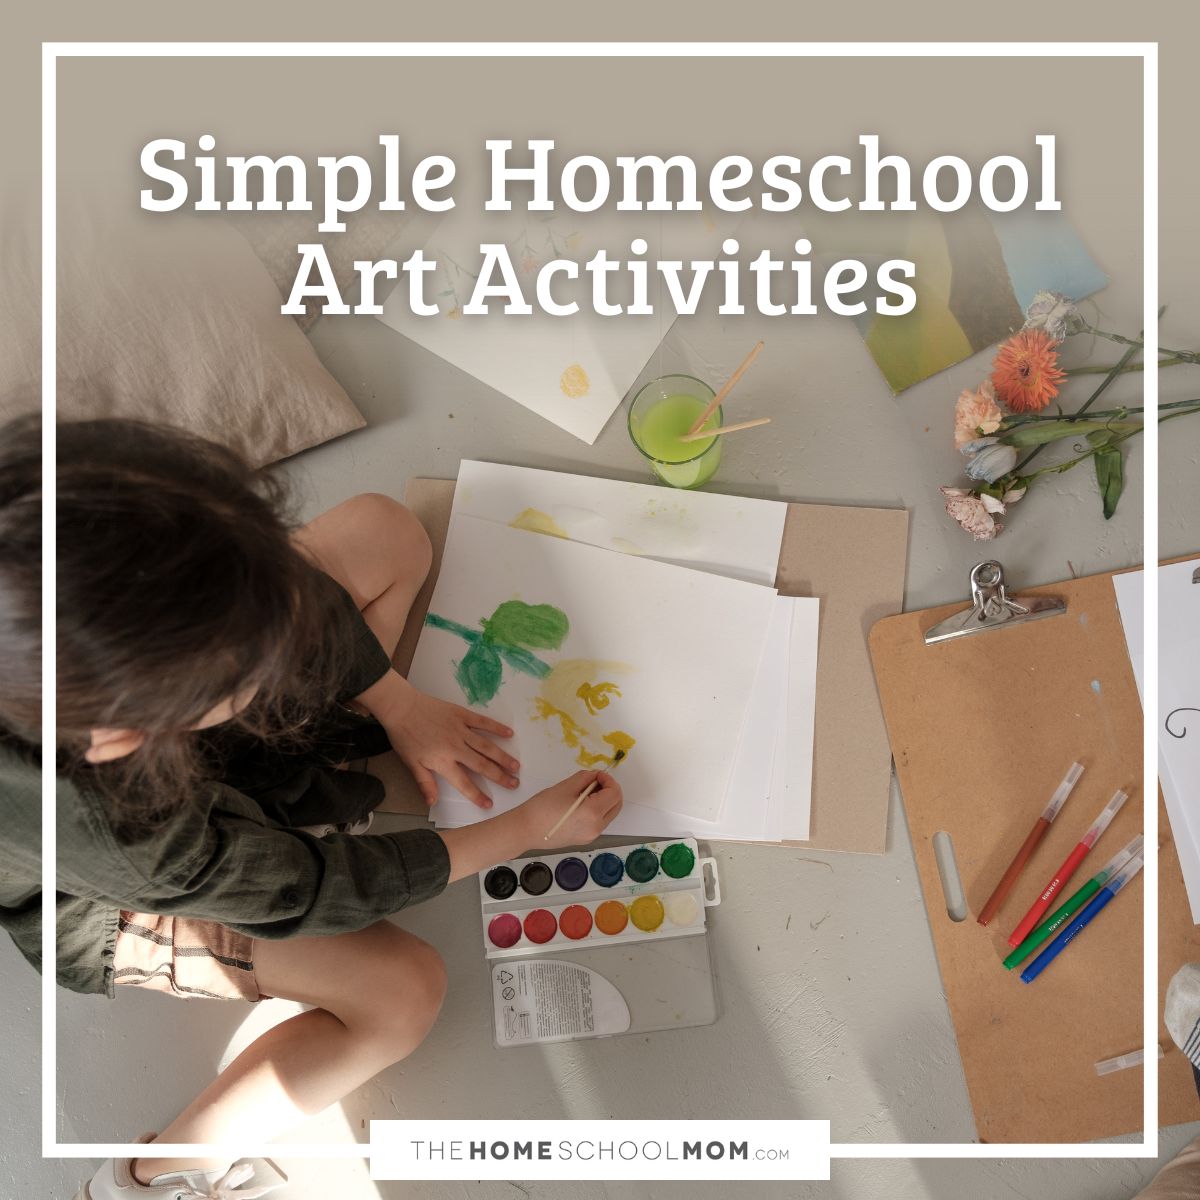 Simple homeschool art activities.